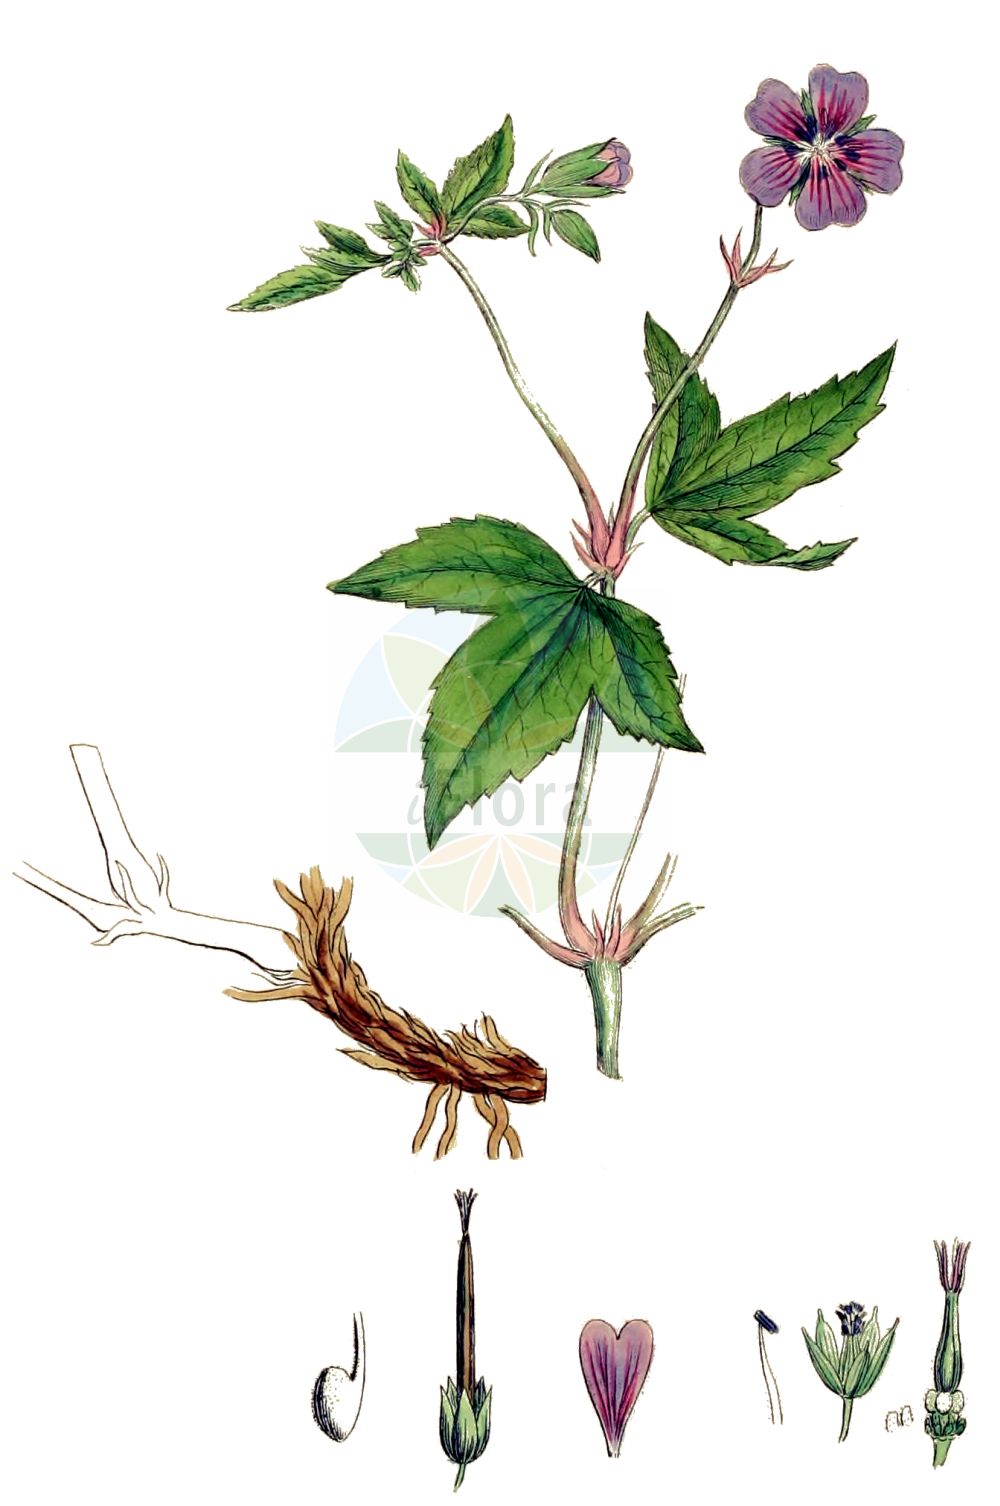 Historische Abbildung von Geranium nodosum (Knotted Crane's-bill). Das Bild zeigt Blatt, Bluete, Frucht und Same. ---- Historical Drawing of Geranium nodosum (Knotted Crane's-bill). The image is showing leaf, flower, fruit and seed.(Geranium nodosum,Knotted Crane's-bill,Geranium eugeniae,Geranium freyeri,Geranium nodosum,Geranium nodosum subsp. eugeniae,Geranium,Storchschnabel,Crane's-bill,Geraniaceae,Storchschnabelgewächse,Geranium family,Blatt,Bluete,Frucht,Same,leaf,flower,fruit,seed,Sowerby (1790-1813))